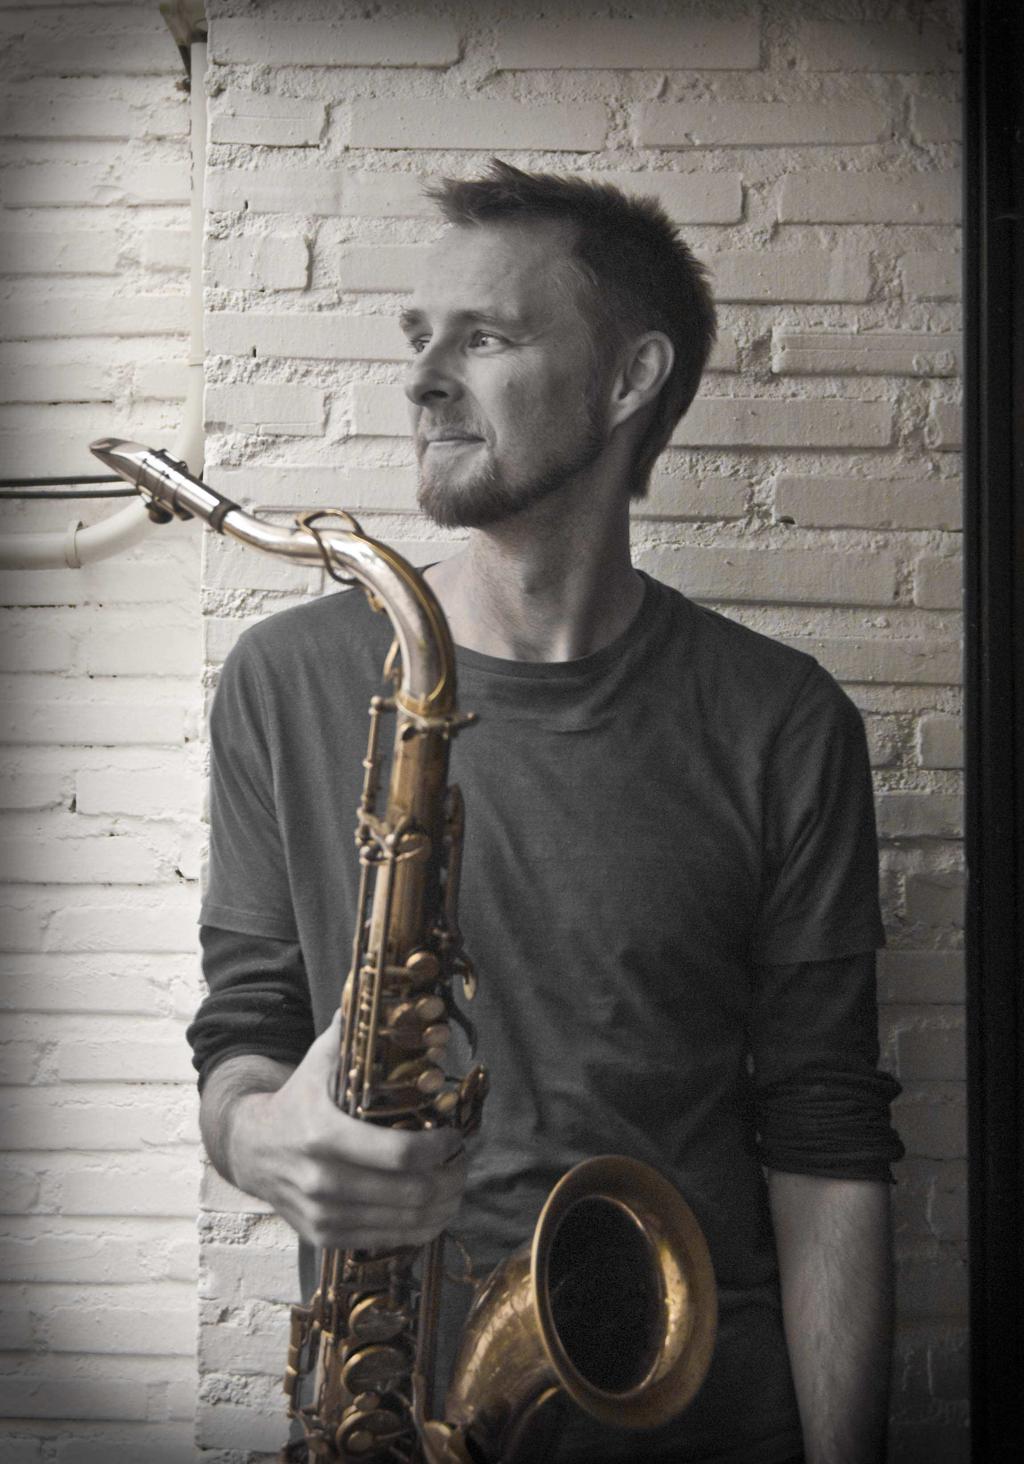 Andrew Lynch (Saxo alto) Nací en Melbourne Australia en 1969, comencé a estudiar saxofón a los 11 años, bajo la dirección de varios profesores.